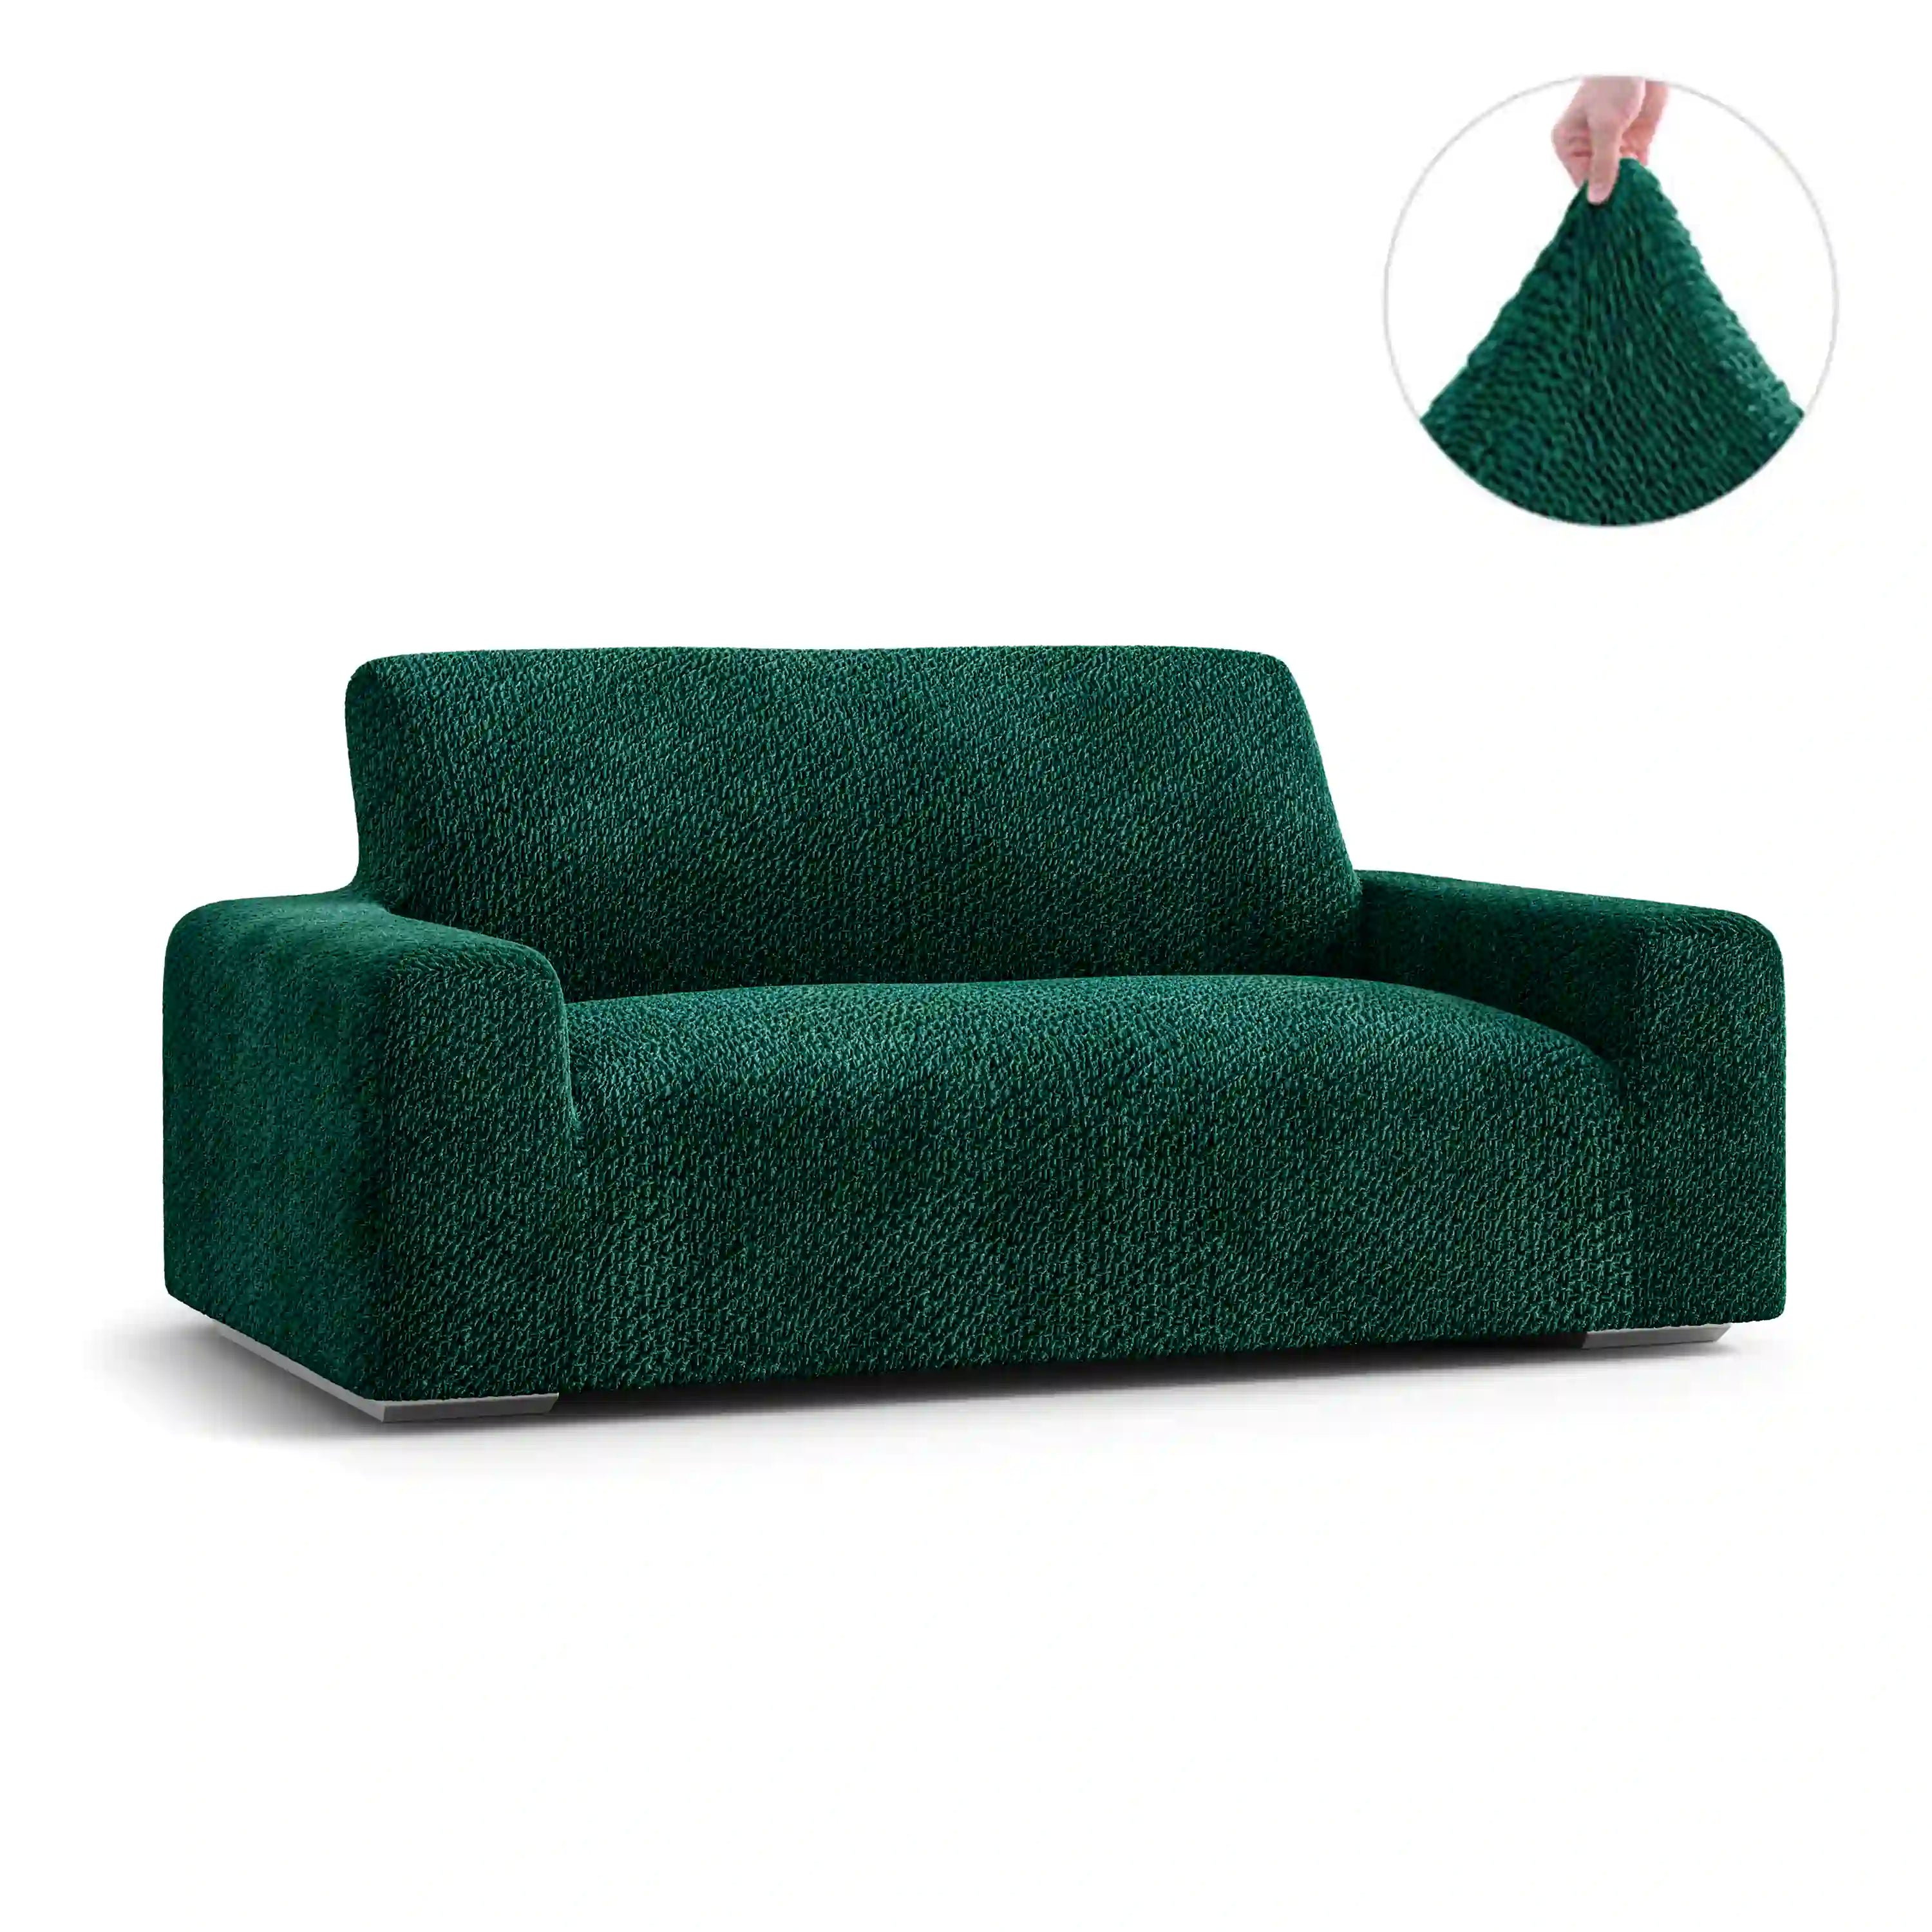 Housse de canapé 2 places - Vert, Collection Velours